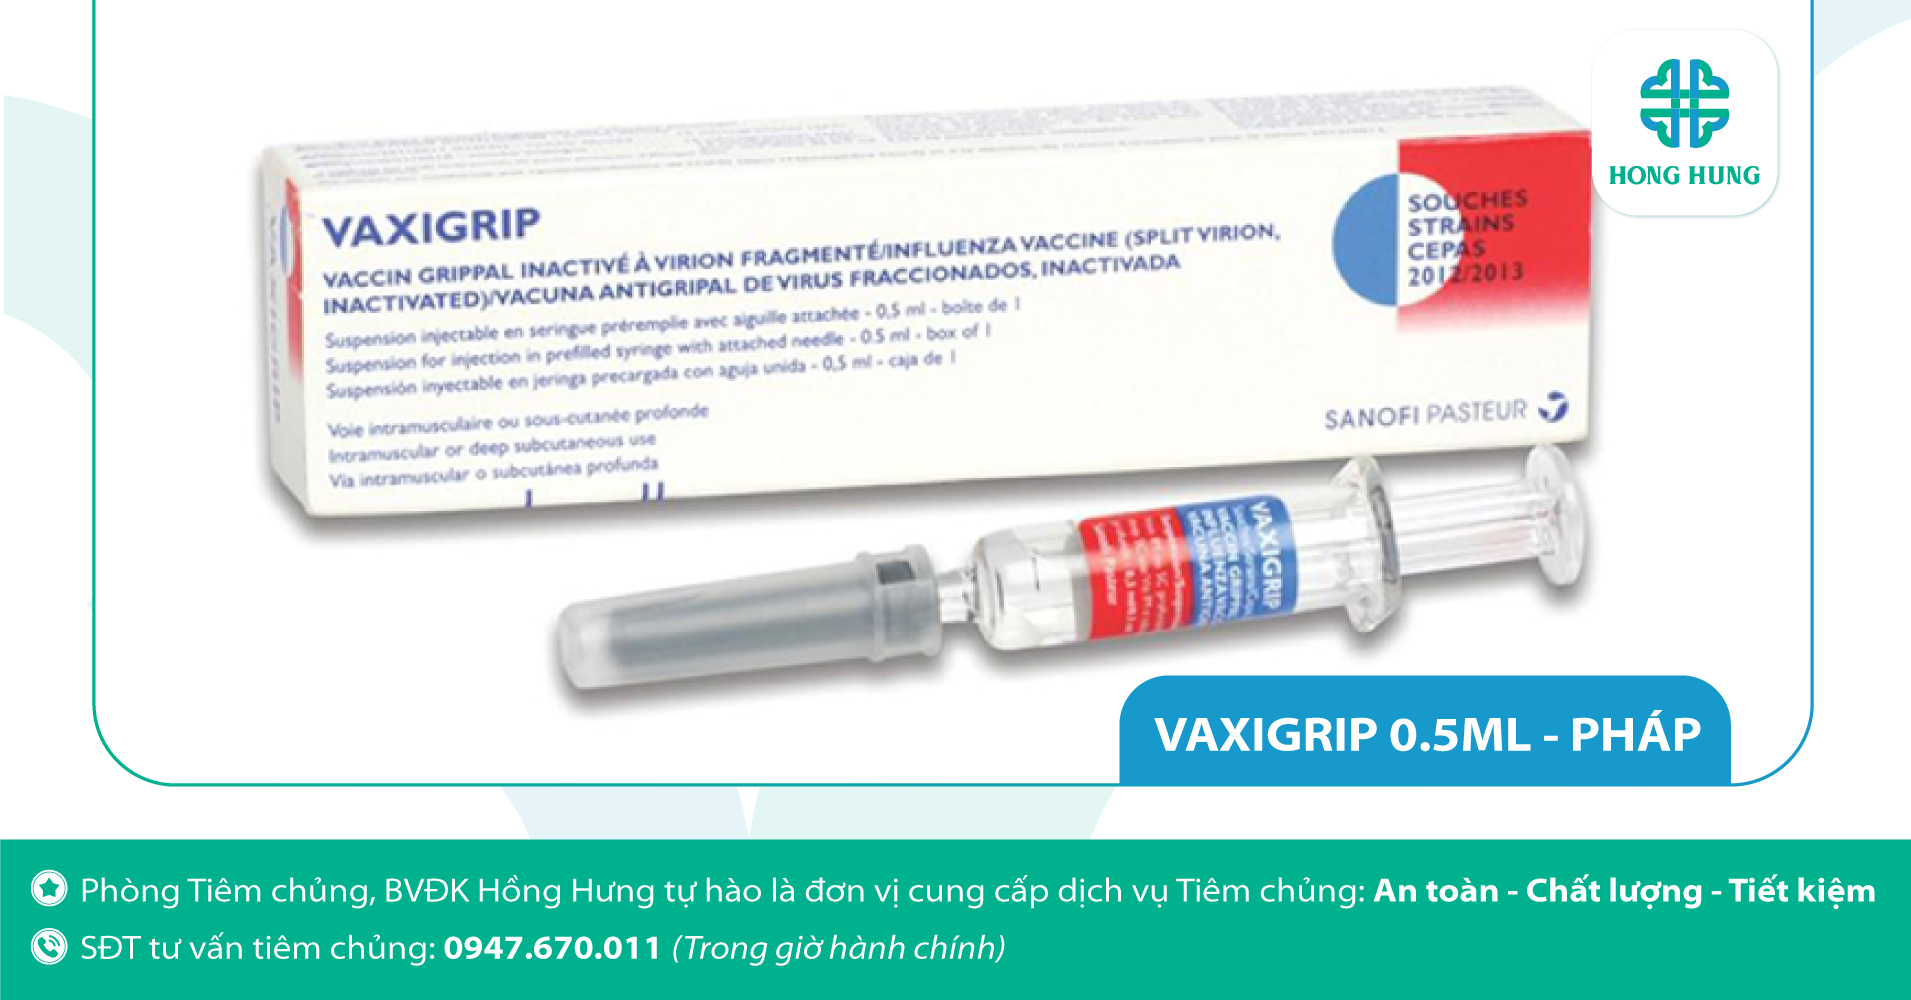 3. Vắc-xin chích ngừa cúm, vắc-xin VAXIGRIP 0.5ml (Pháp)